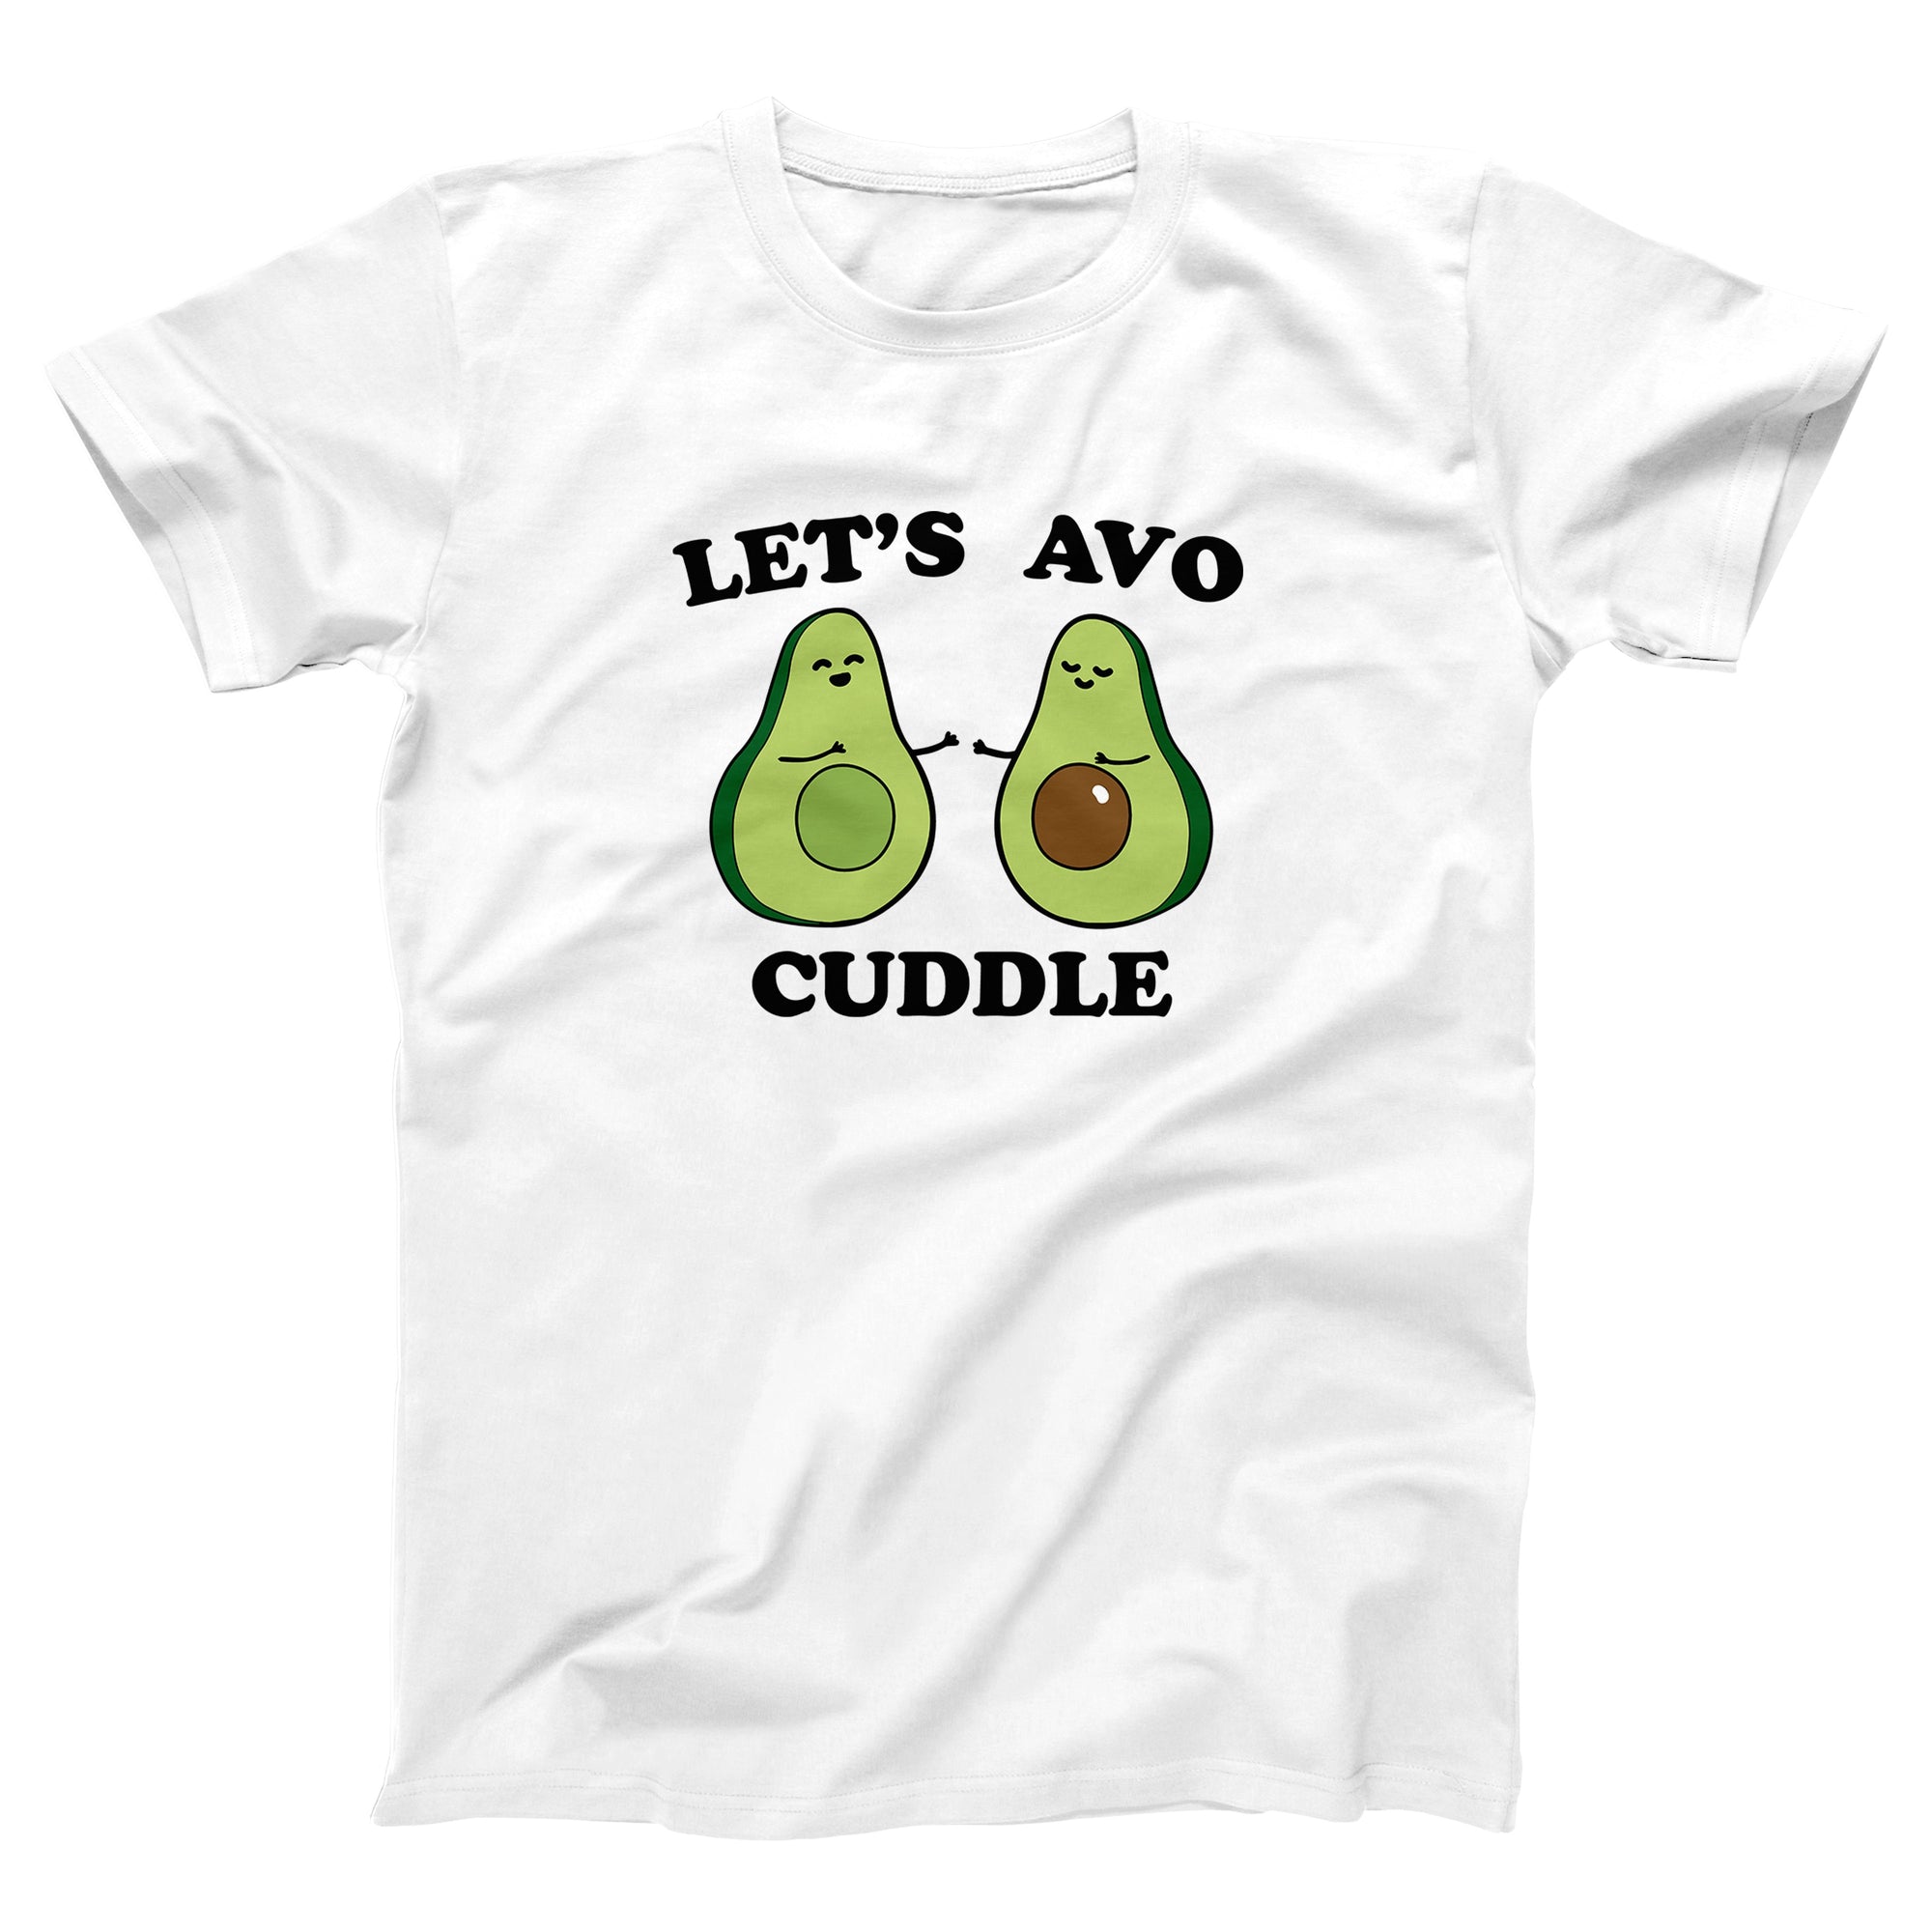 Let's Avocuddle Adult Unisex T-Shirt - marionmartigny